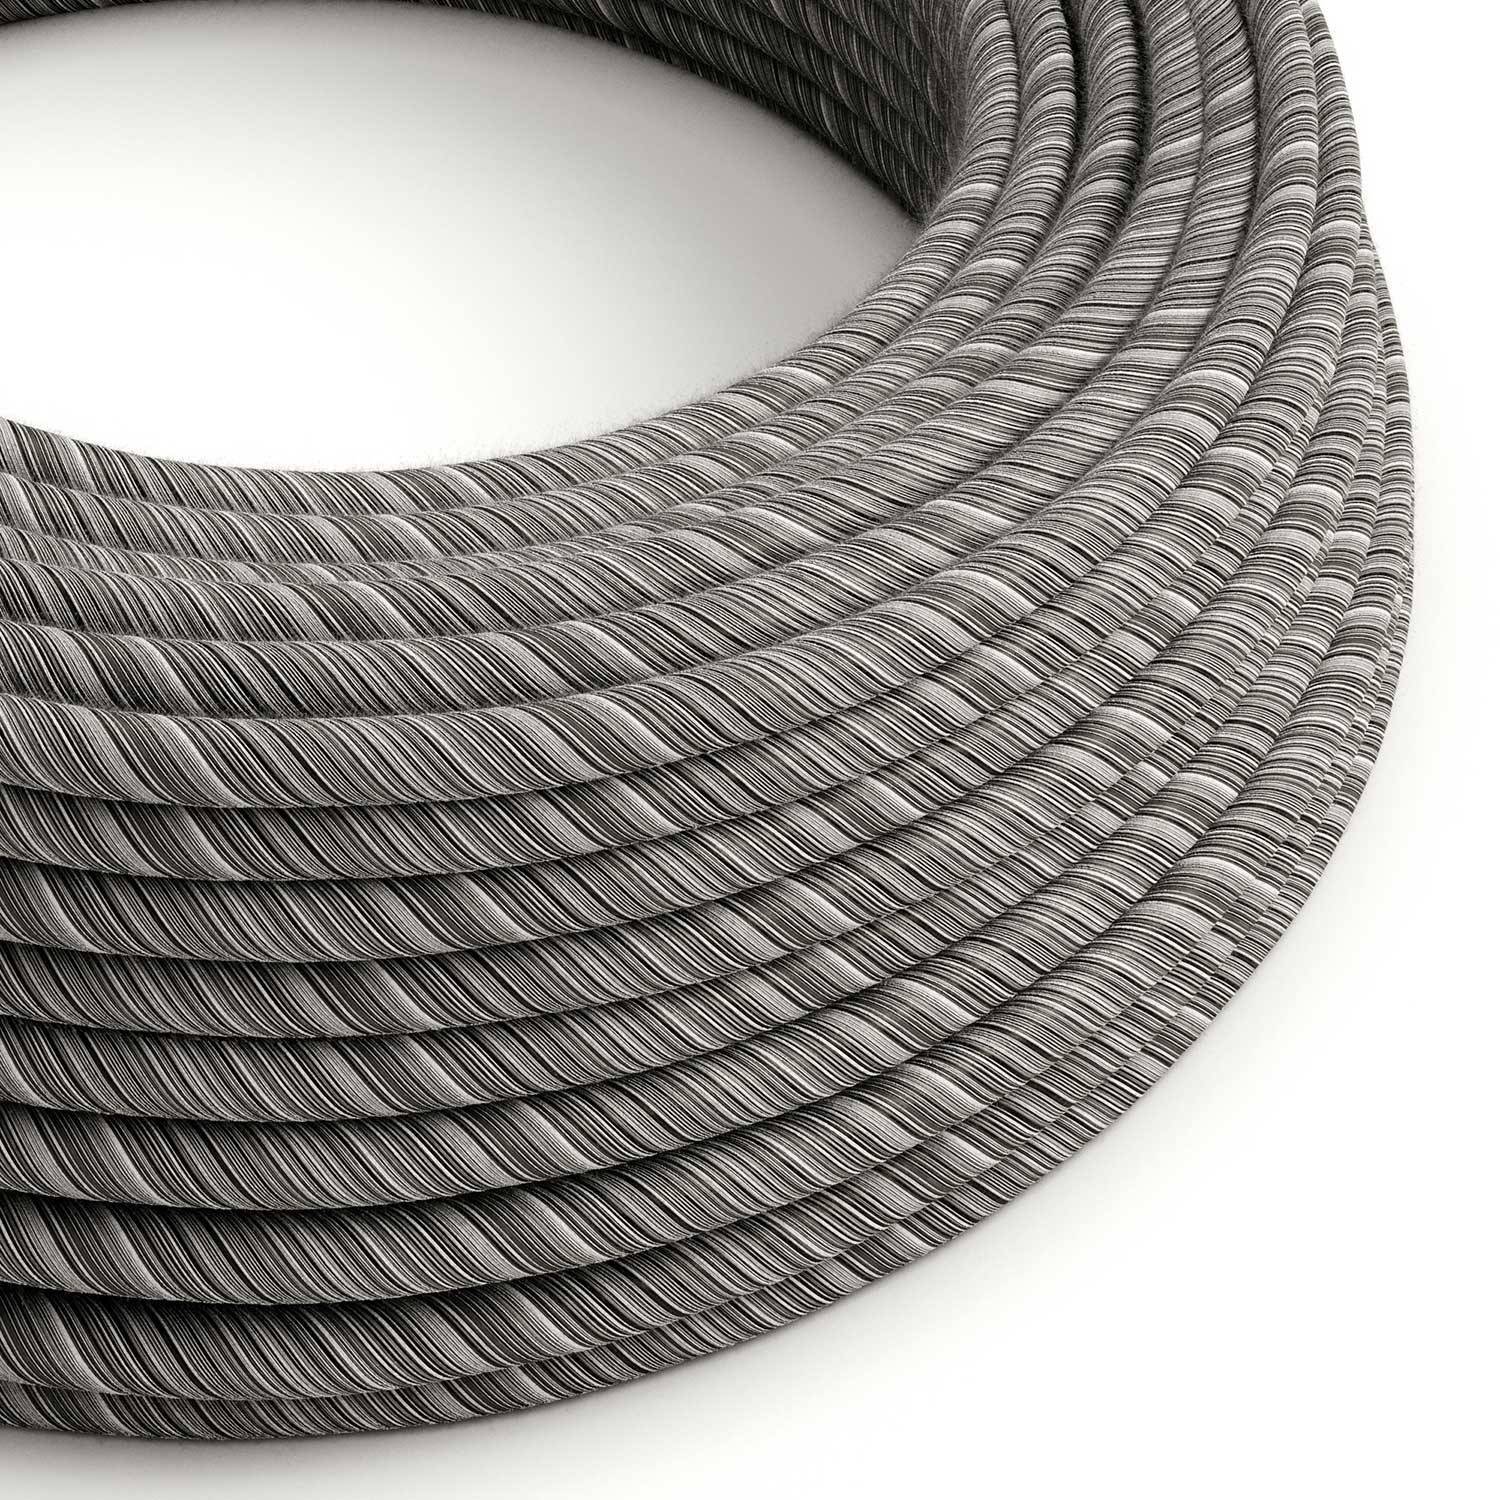 Cablu textil Cotton Melange Black Vertigo - Creative-Cables Original - ERC37 rotund 2x0.75mm / 3x0.75mm